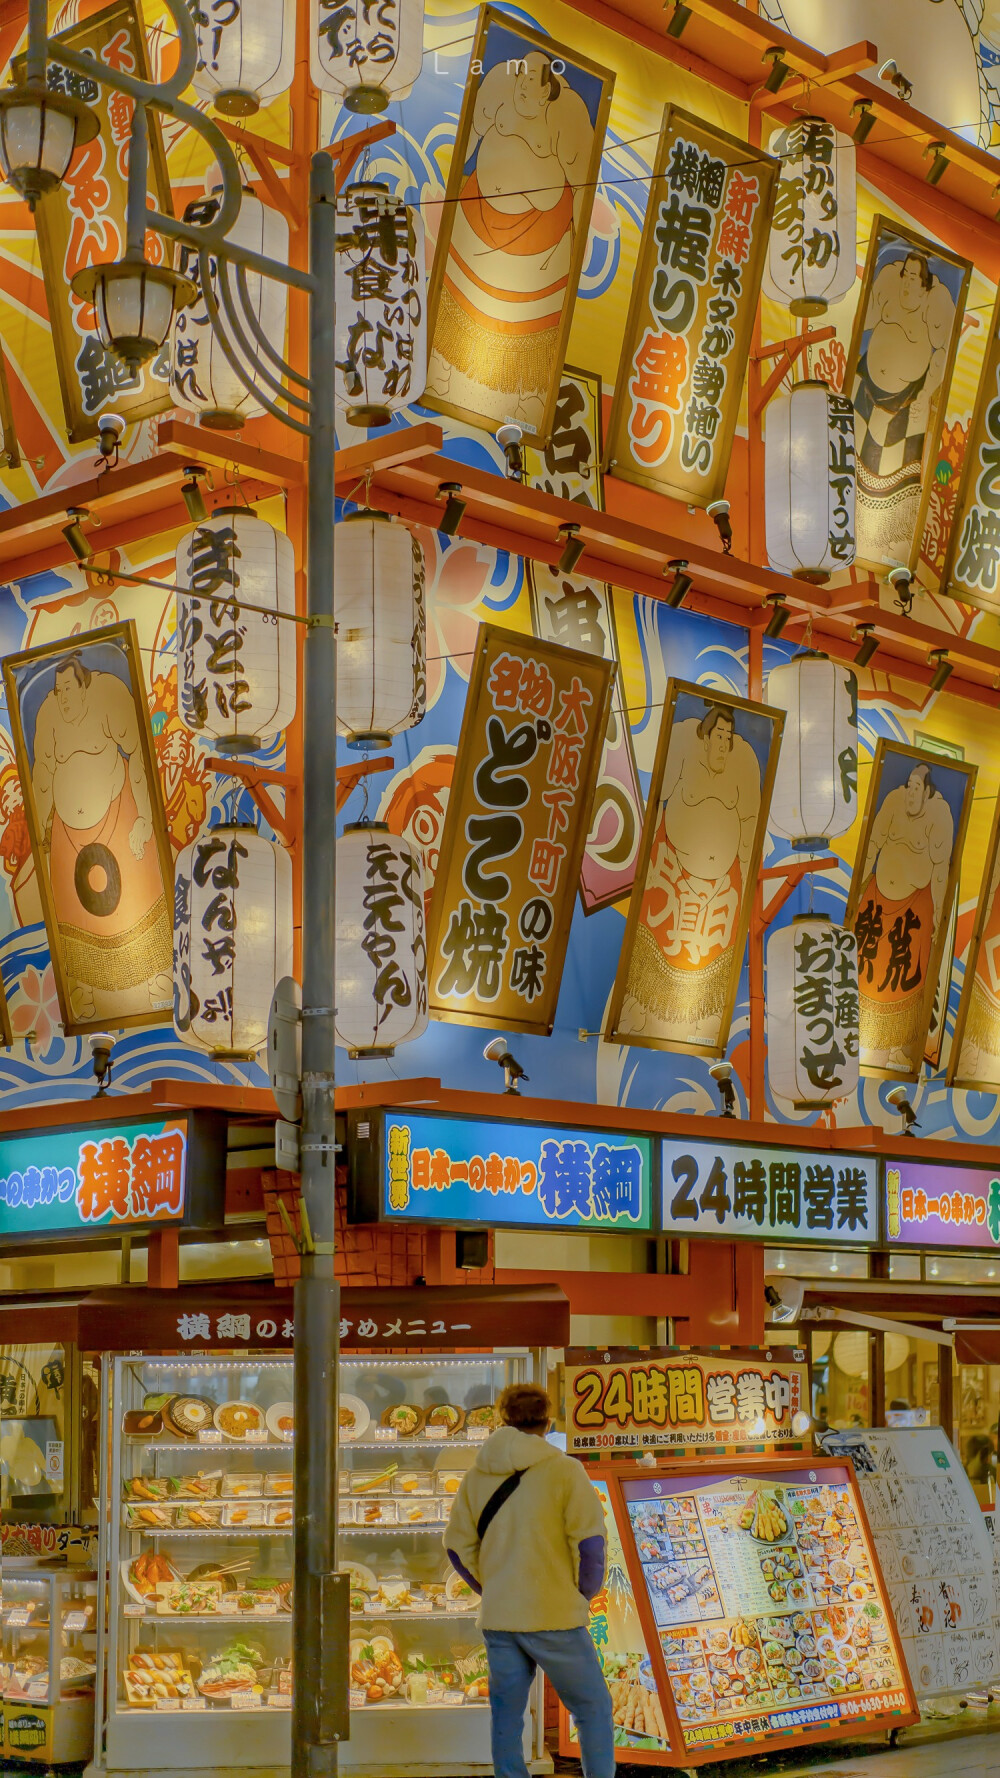 大阪の夜
©小武拉莫
#摄影##大阪街景##手机壁纸#